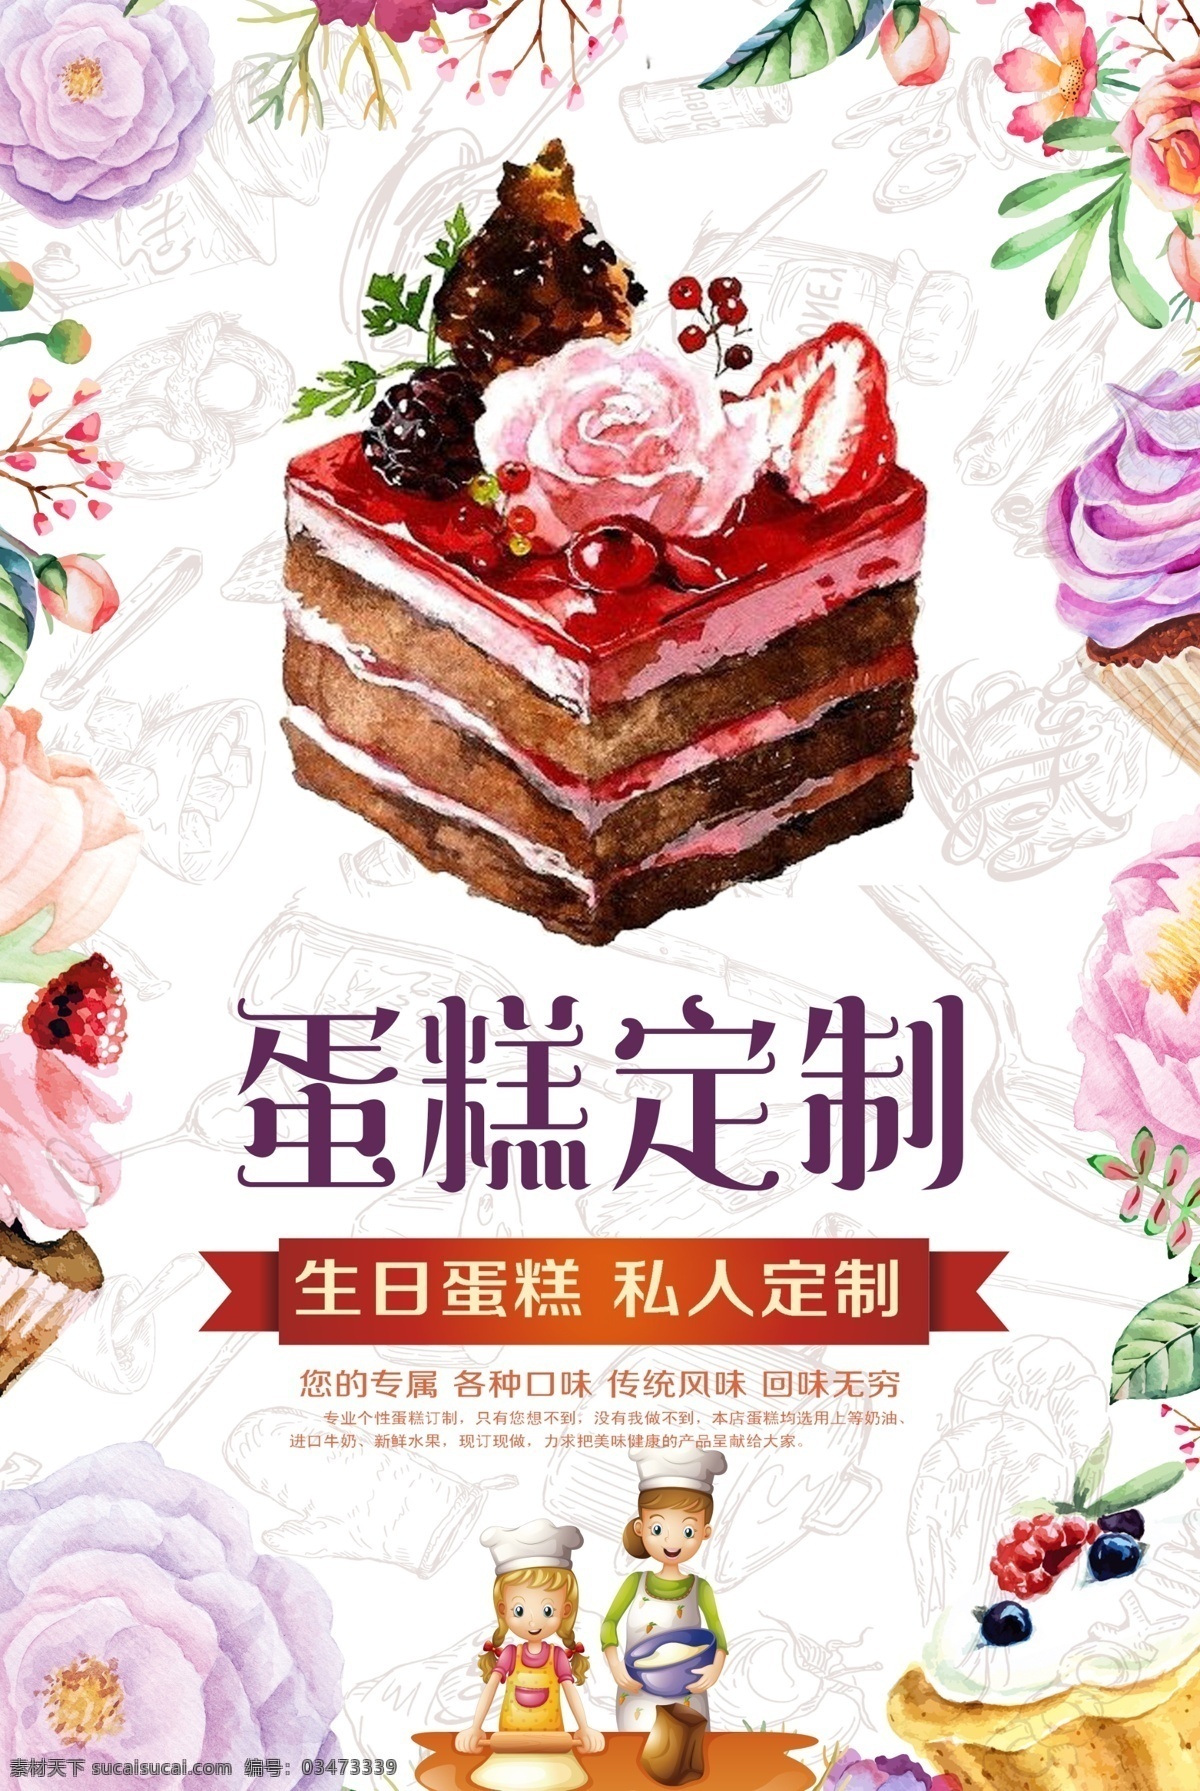 手绘蛋糕定制 手绘蛋糕 蛋糕 蛋糕图片 蛋糕定制 彩绘蛋糕 卡通蛋糕 生日蛋糕定制 彩绘花卉背景 海报